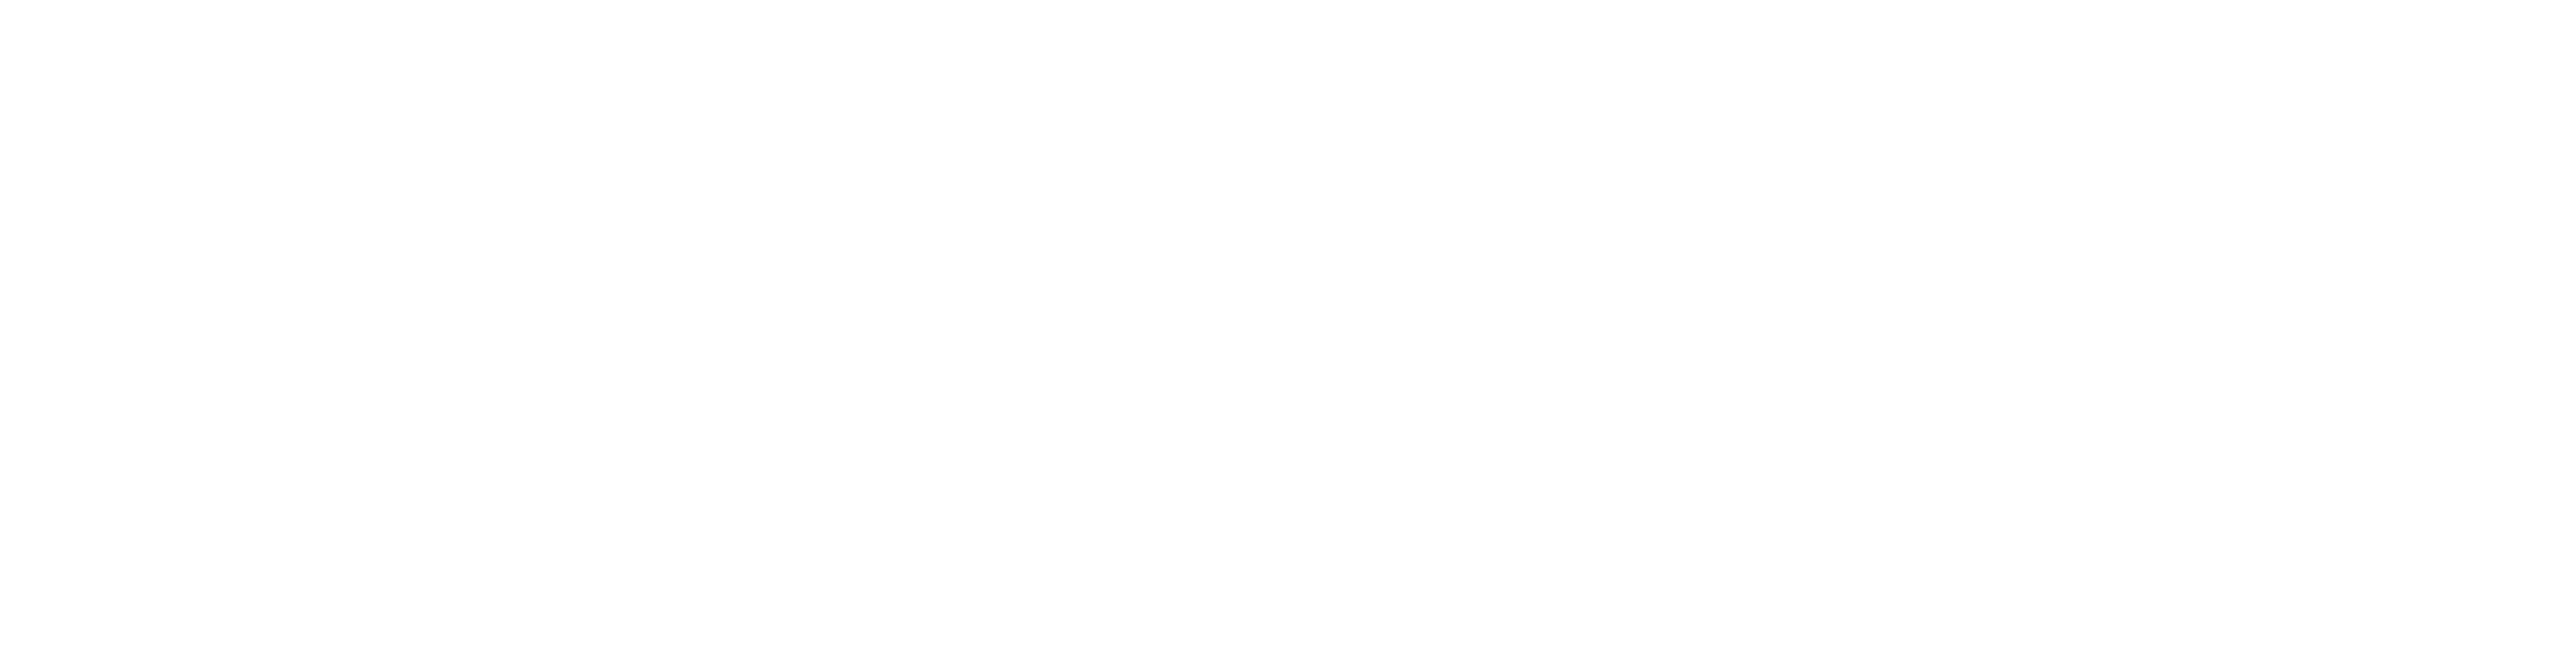 Panjandrum logo